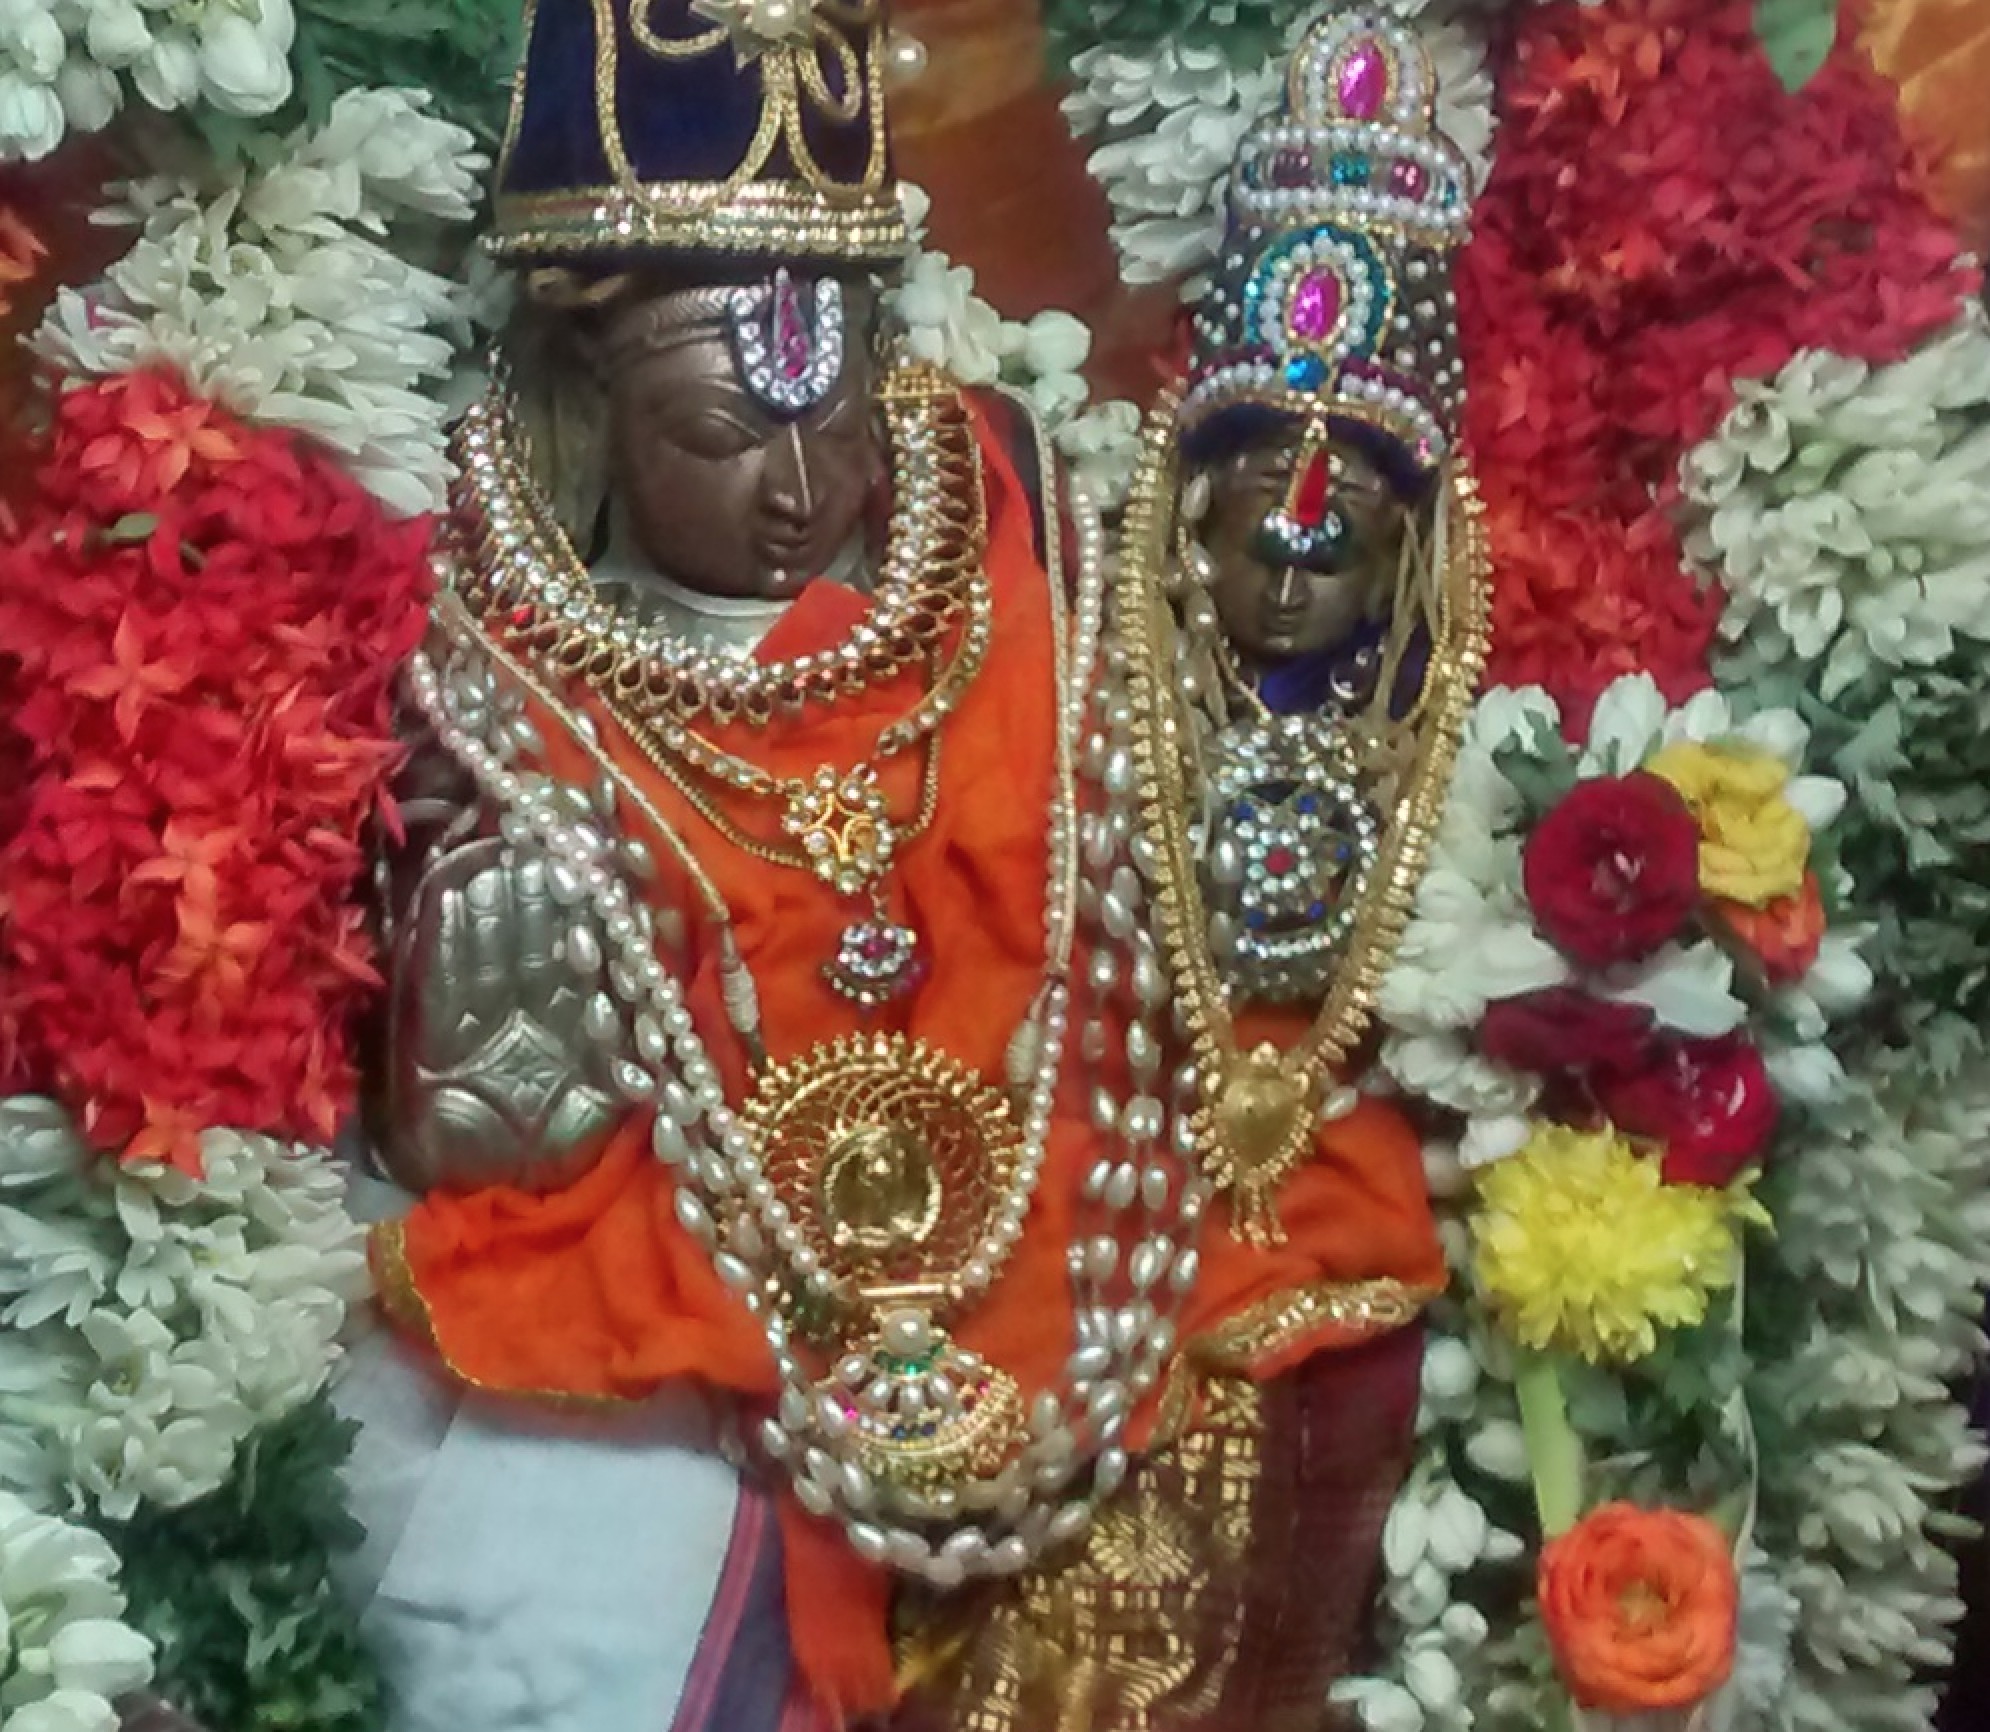 Srirangam Dasavathara Sannadhi Aadi Velli Dolotsavam